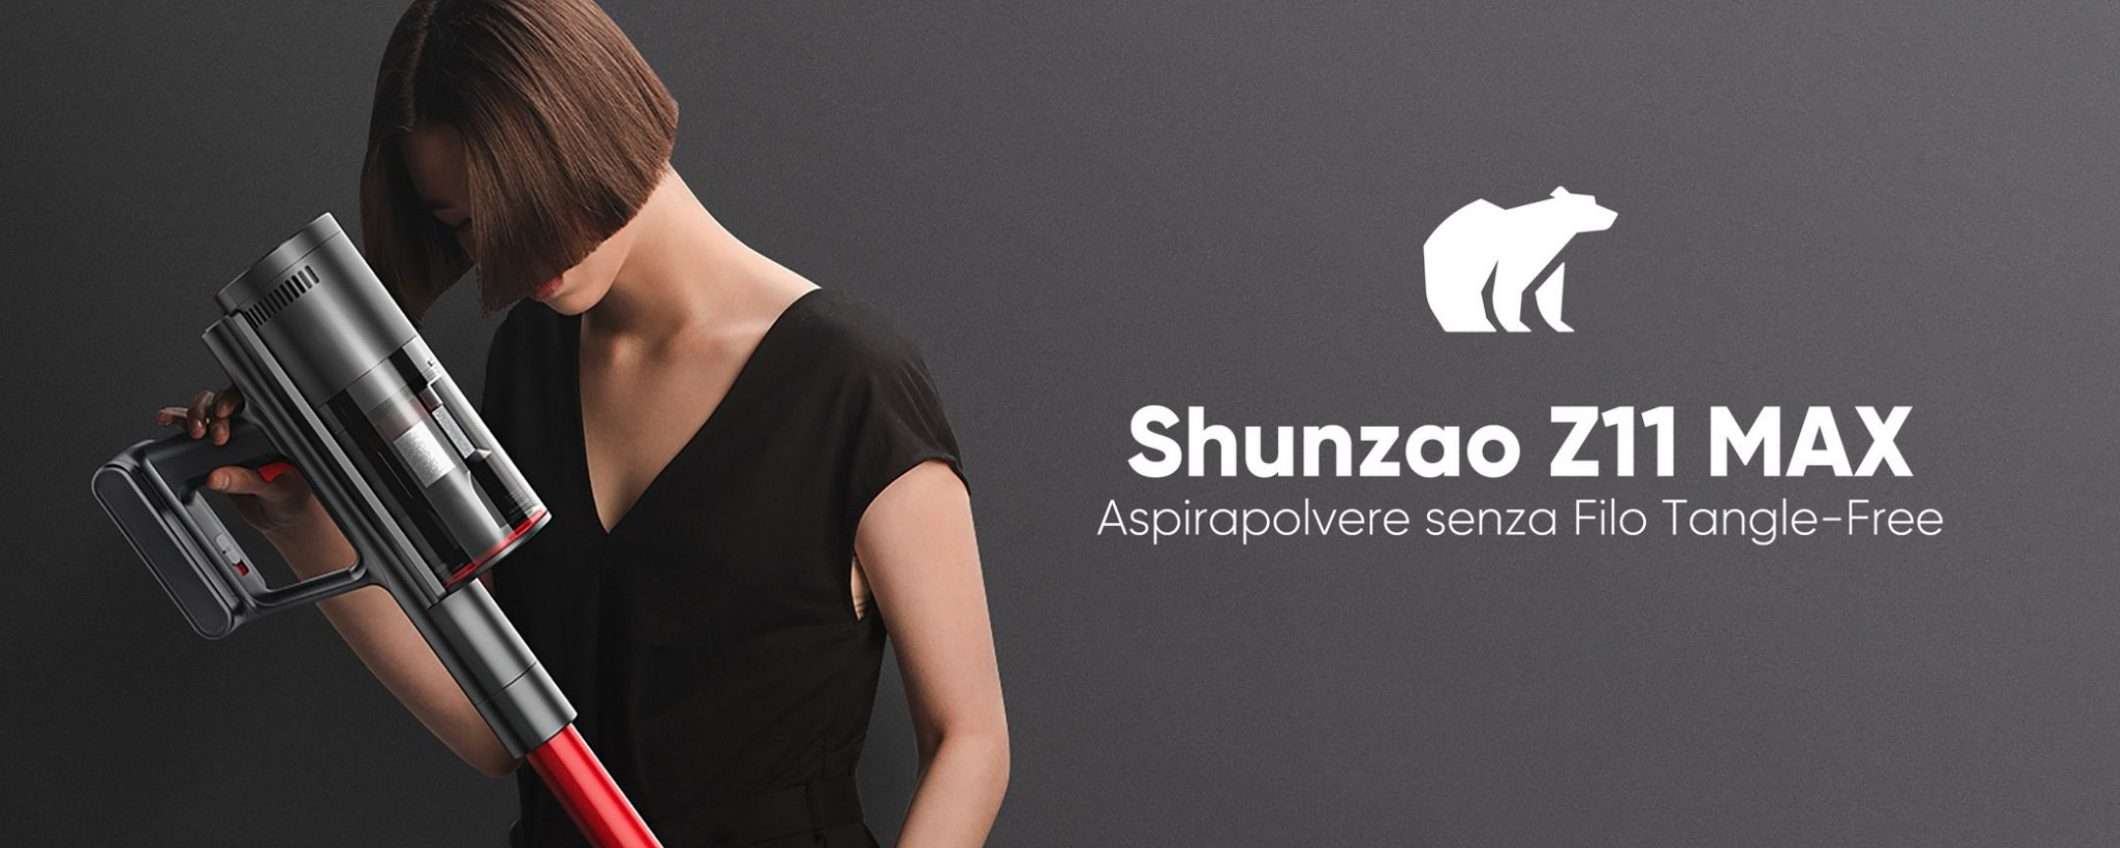 Aspirapolvere Shunzao Z11 MAX: STOP alla polvere e zero grovigli